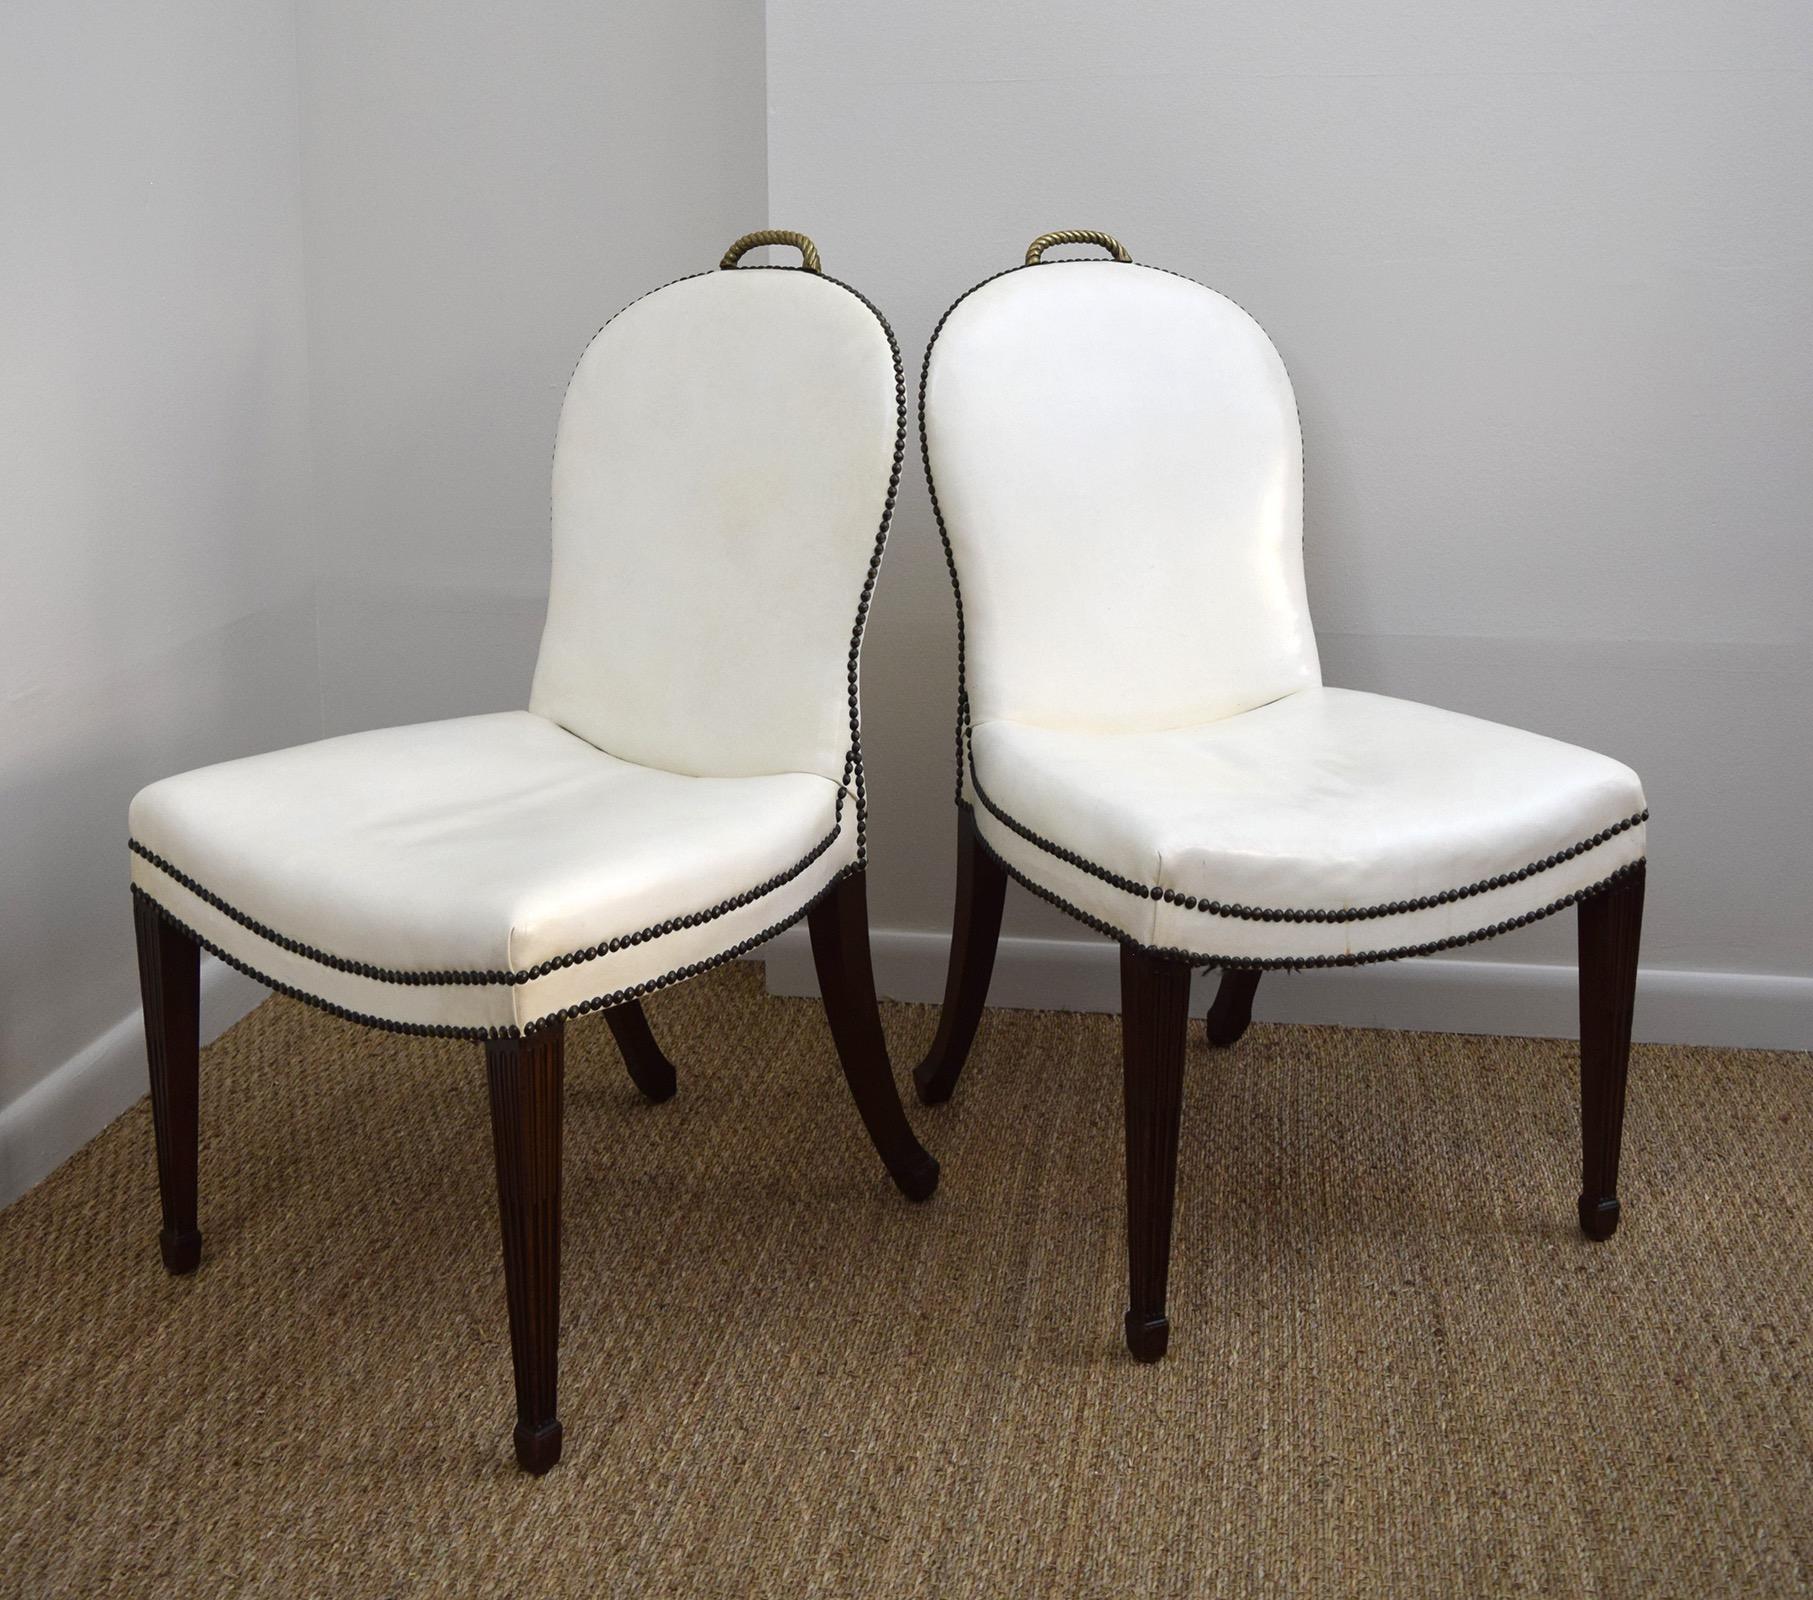 Diese überdimensionalen Stühle sollen von dem Chicagoer Architekten Sam Marx entworfen worden sein, aber wahrscheinlich wurden sie von William Quigley hergestellt, dessen Werkstatt und Ausstellungsraum ihn mit Möbeln versorgte. Die geschwungenen